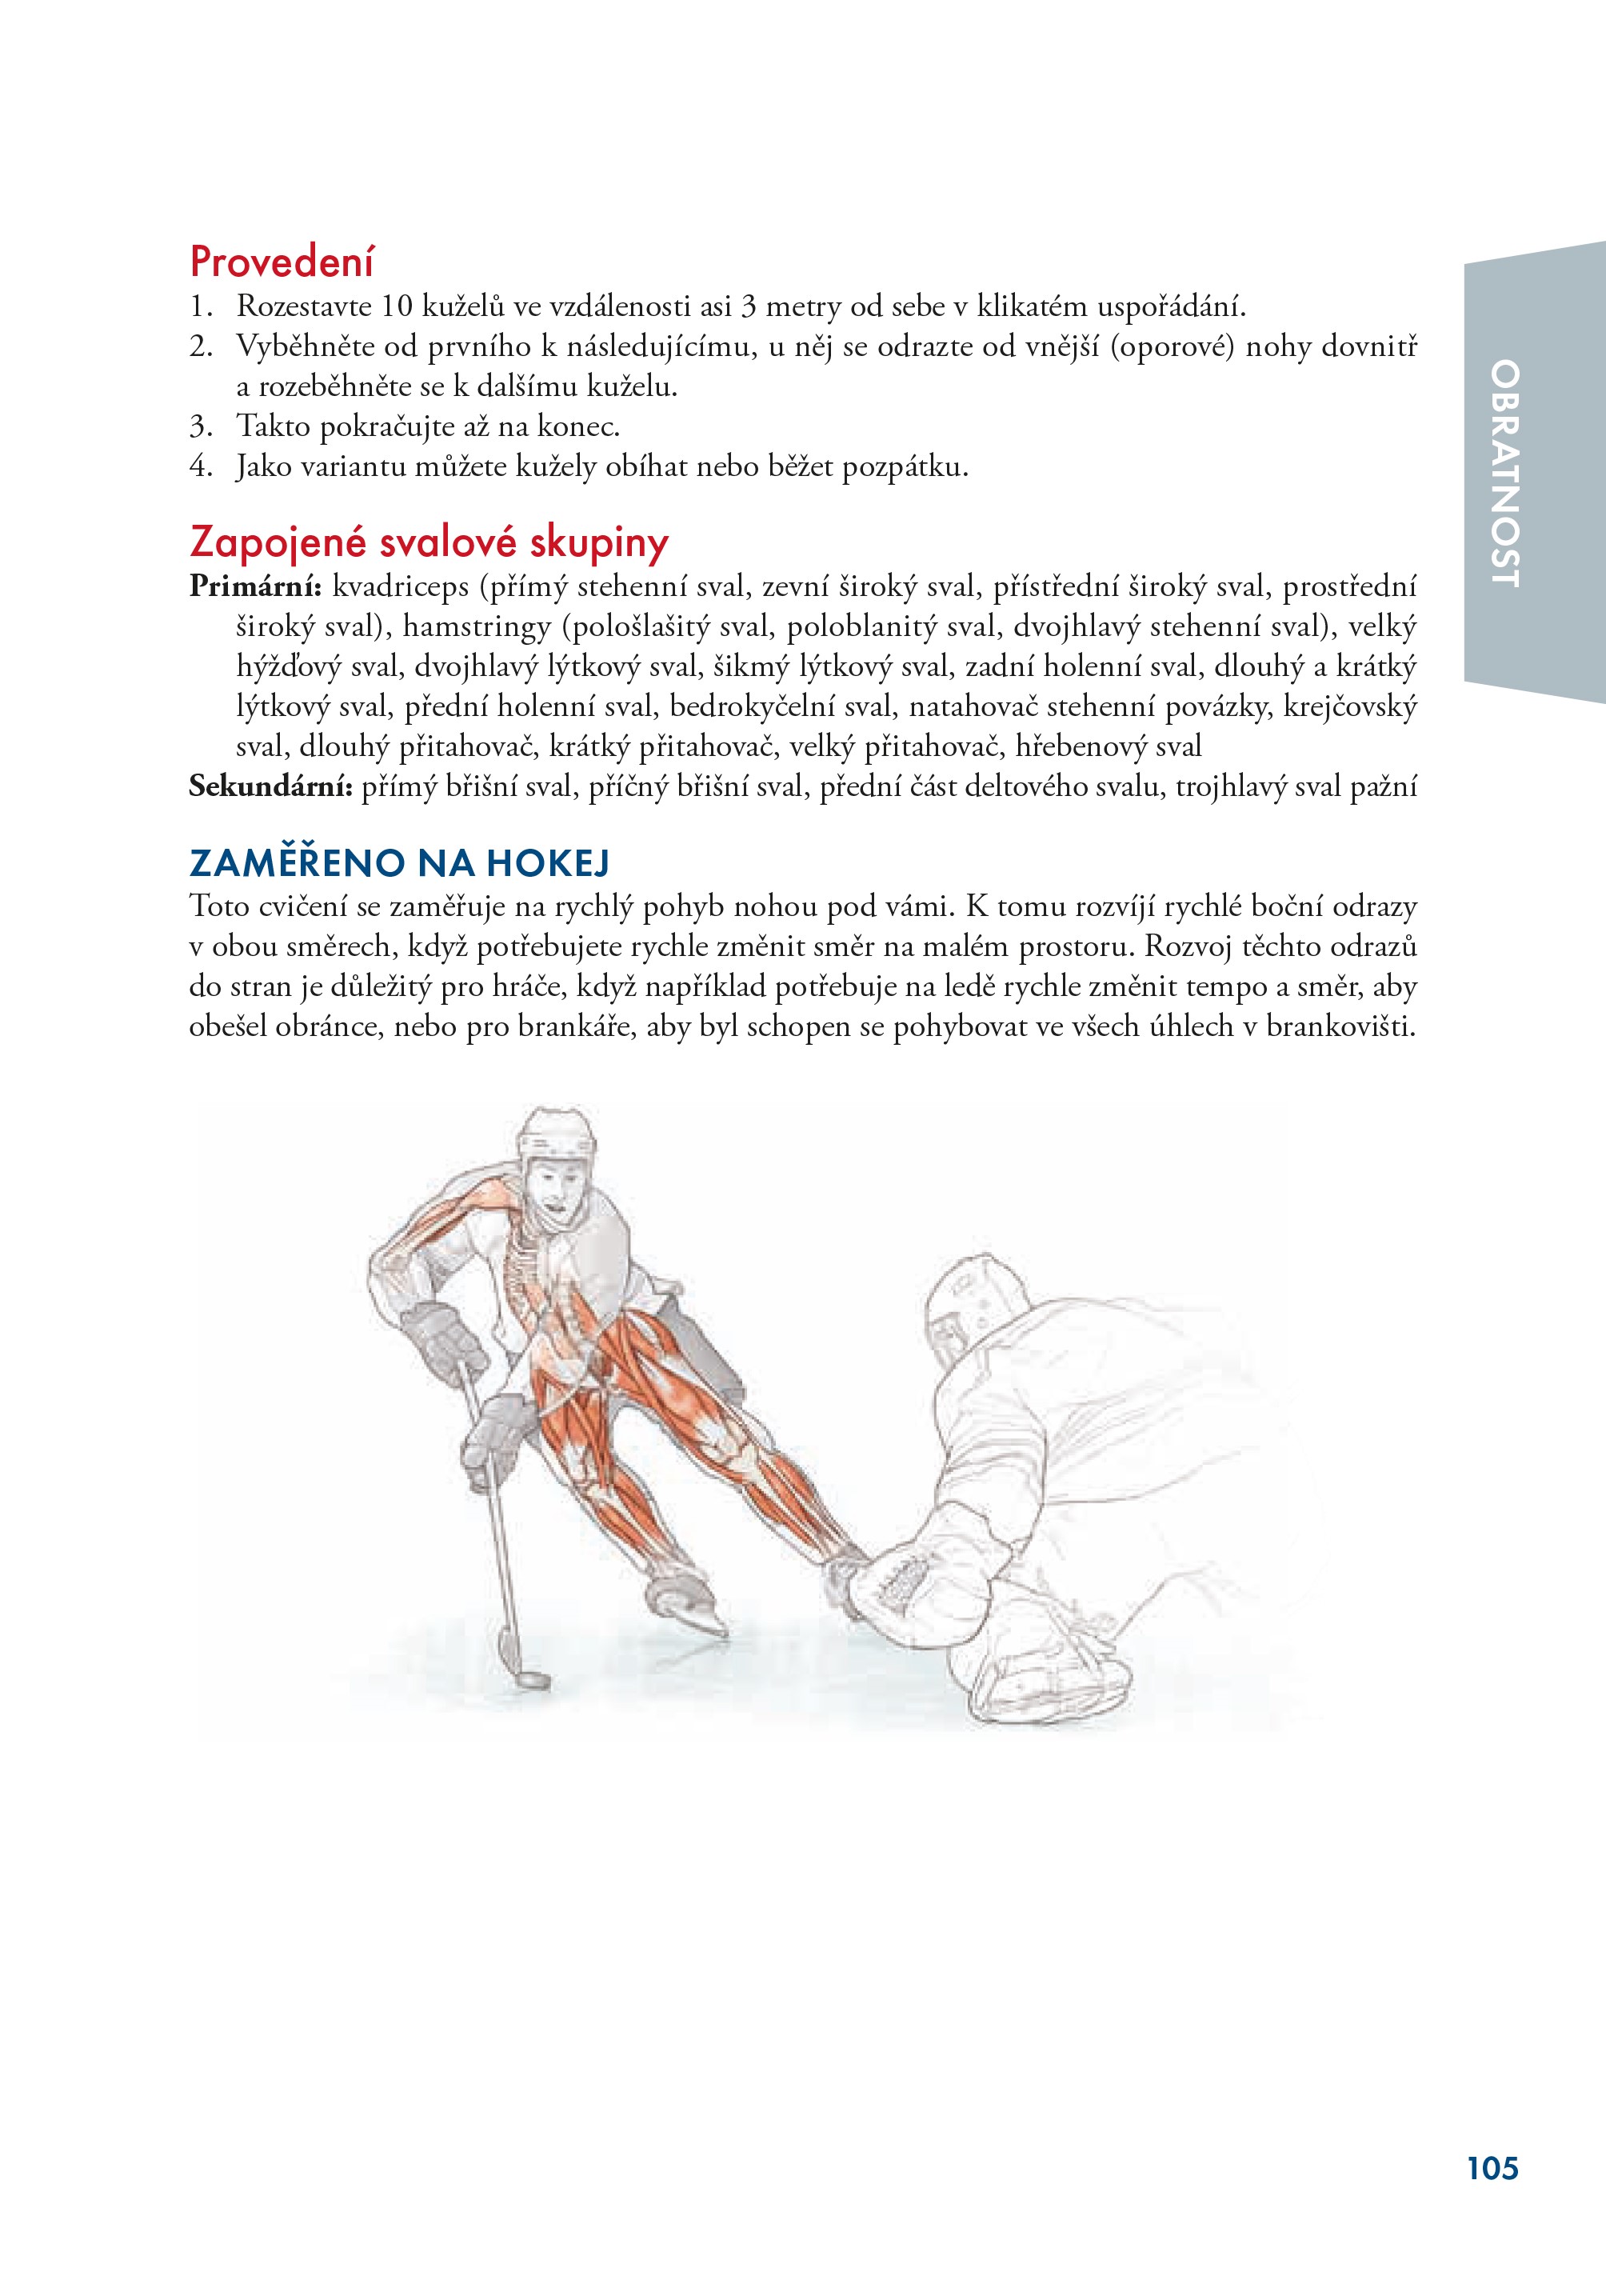 Hokej - anatomie